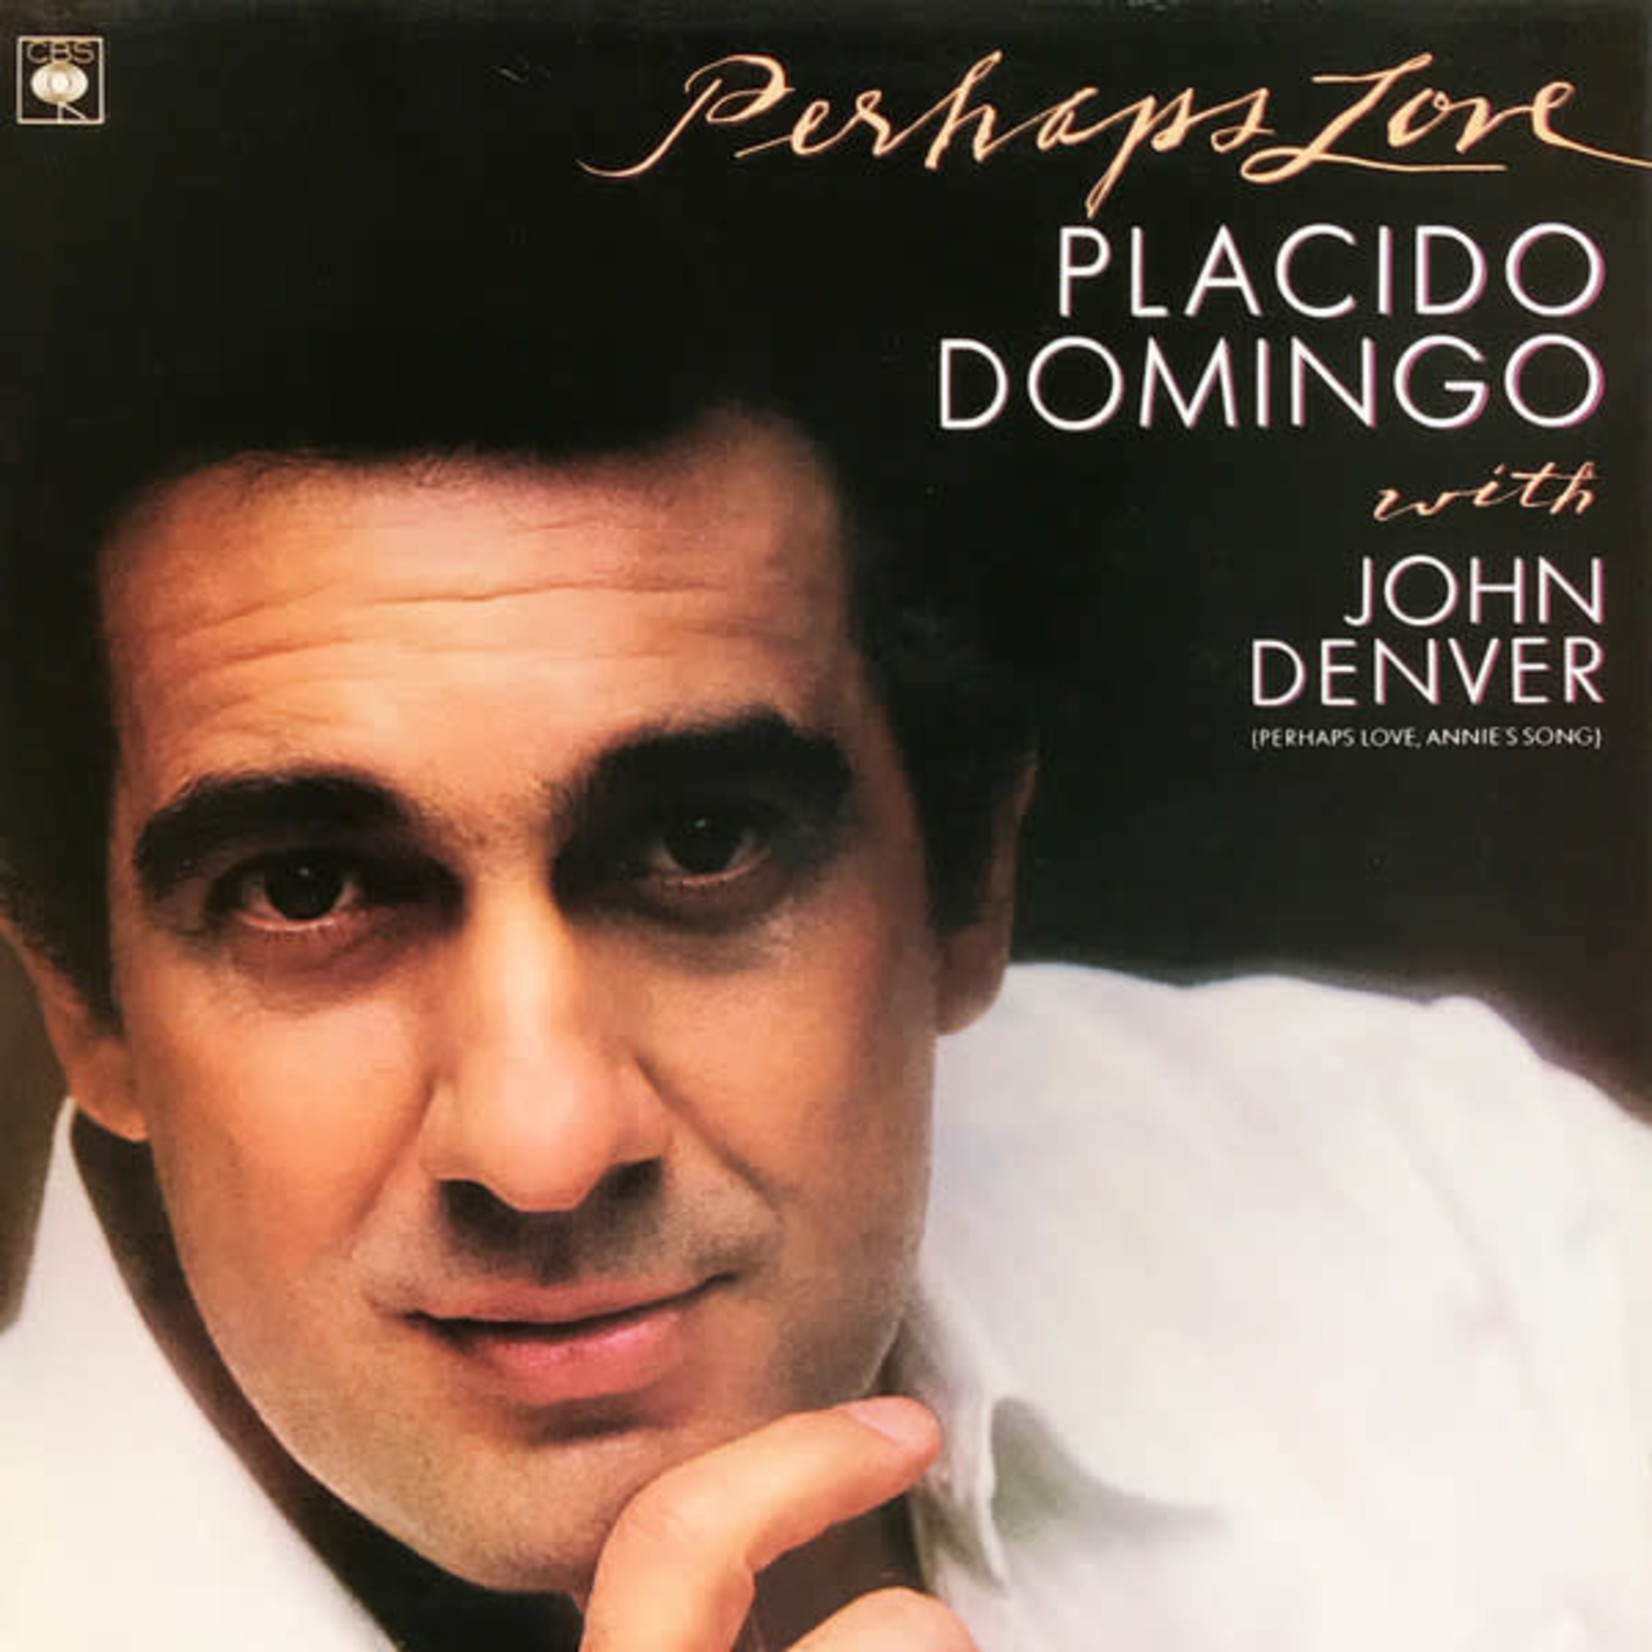 [Vintage] Placido Domingo - Perhaps Love (feat. John Denver